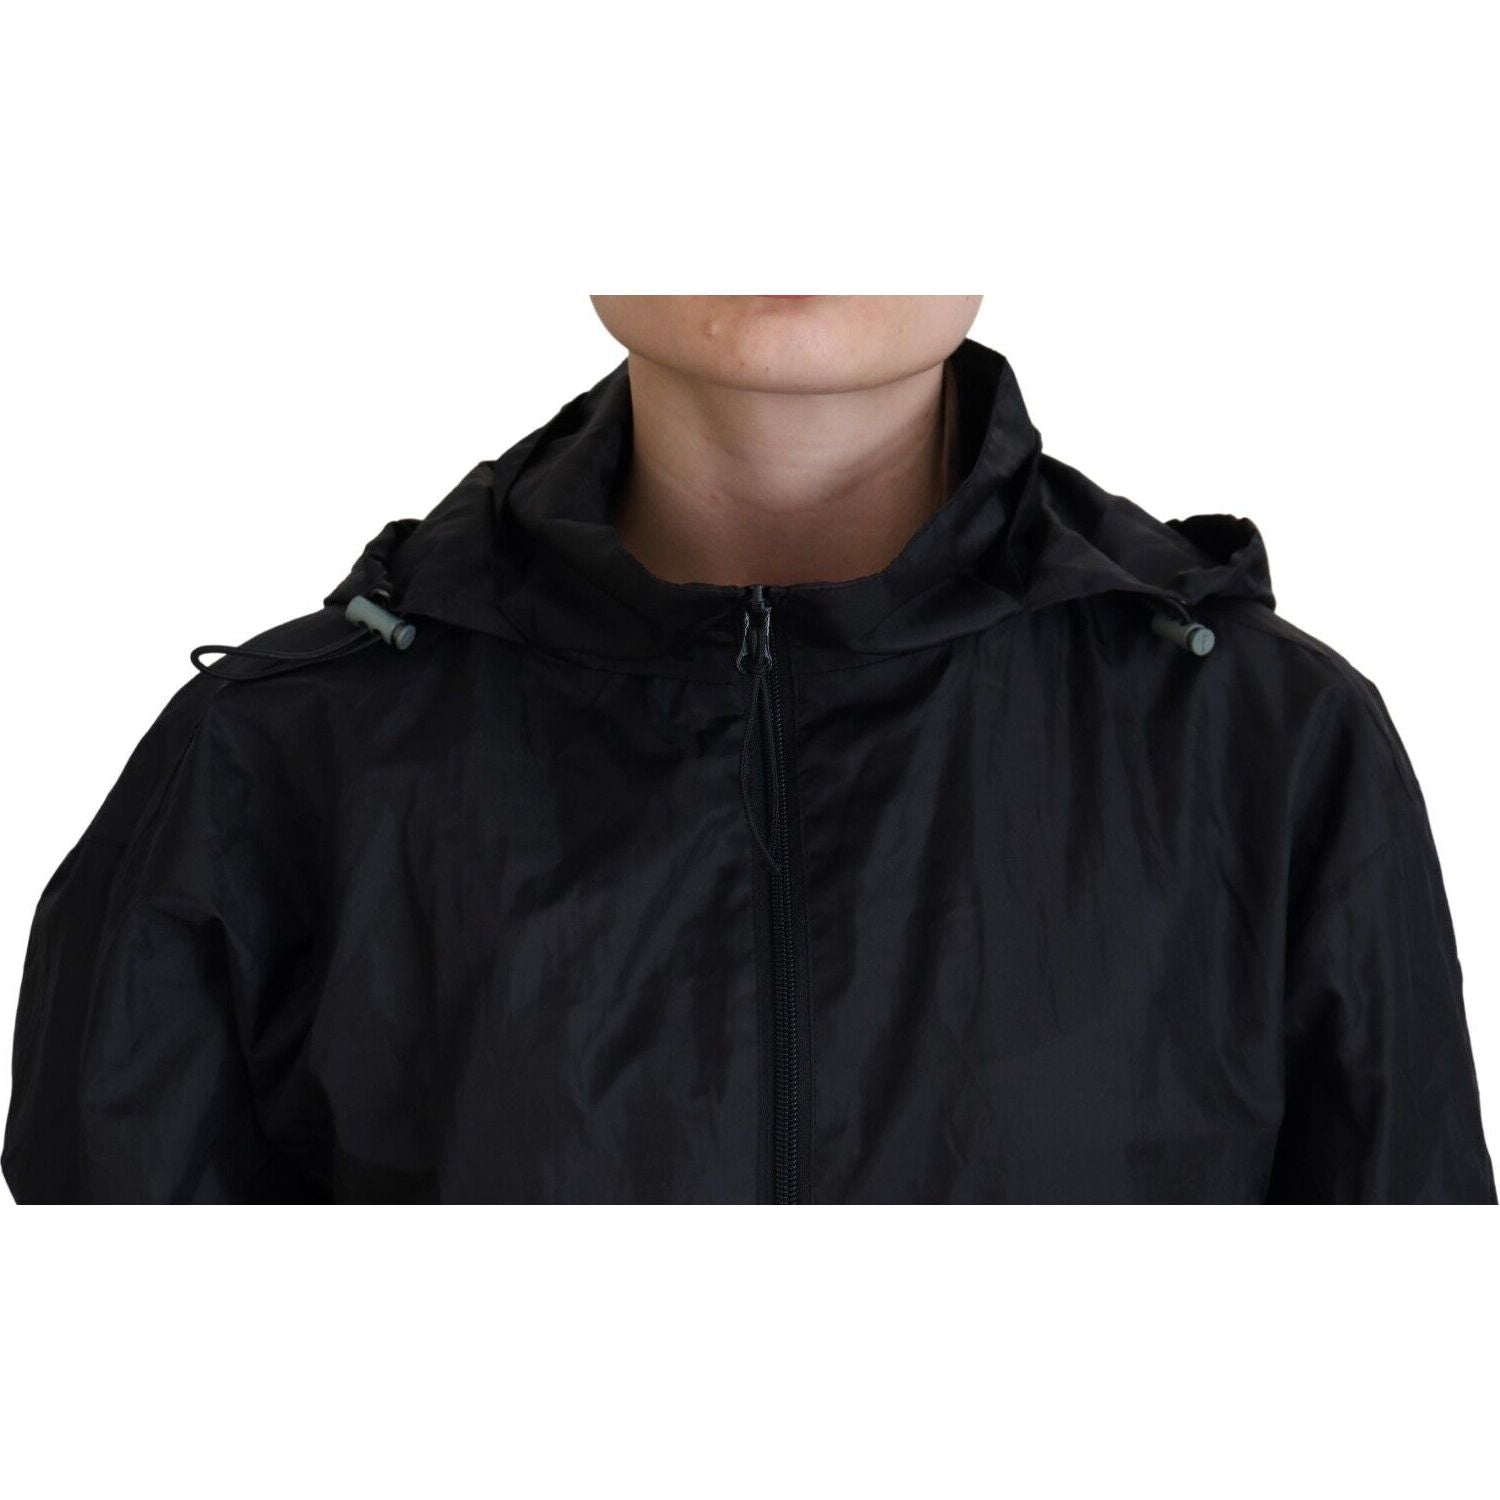 Dolce & Gabbana | Black Printed Nylon Hooded Bomber Jacket | McRichard Designer Brands